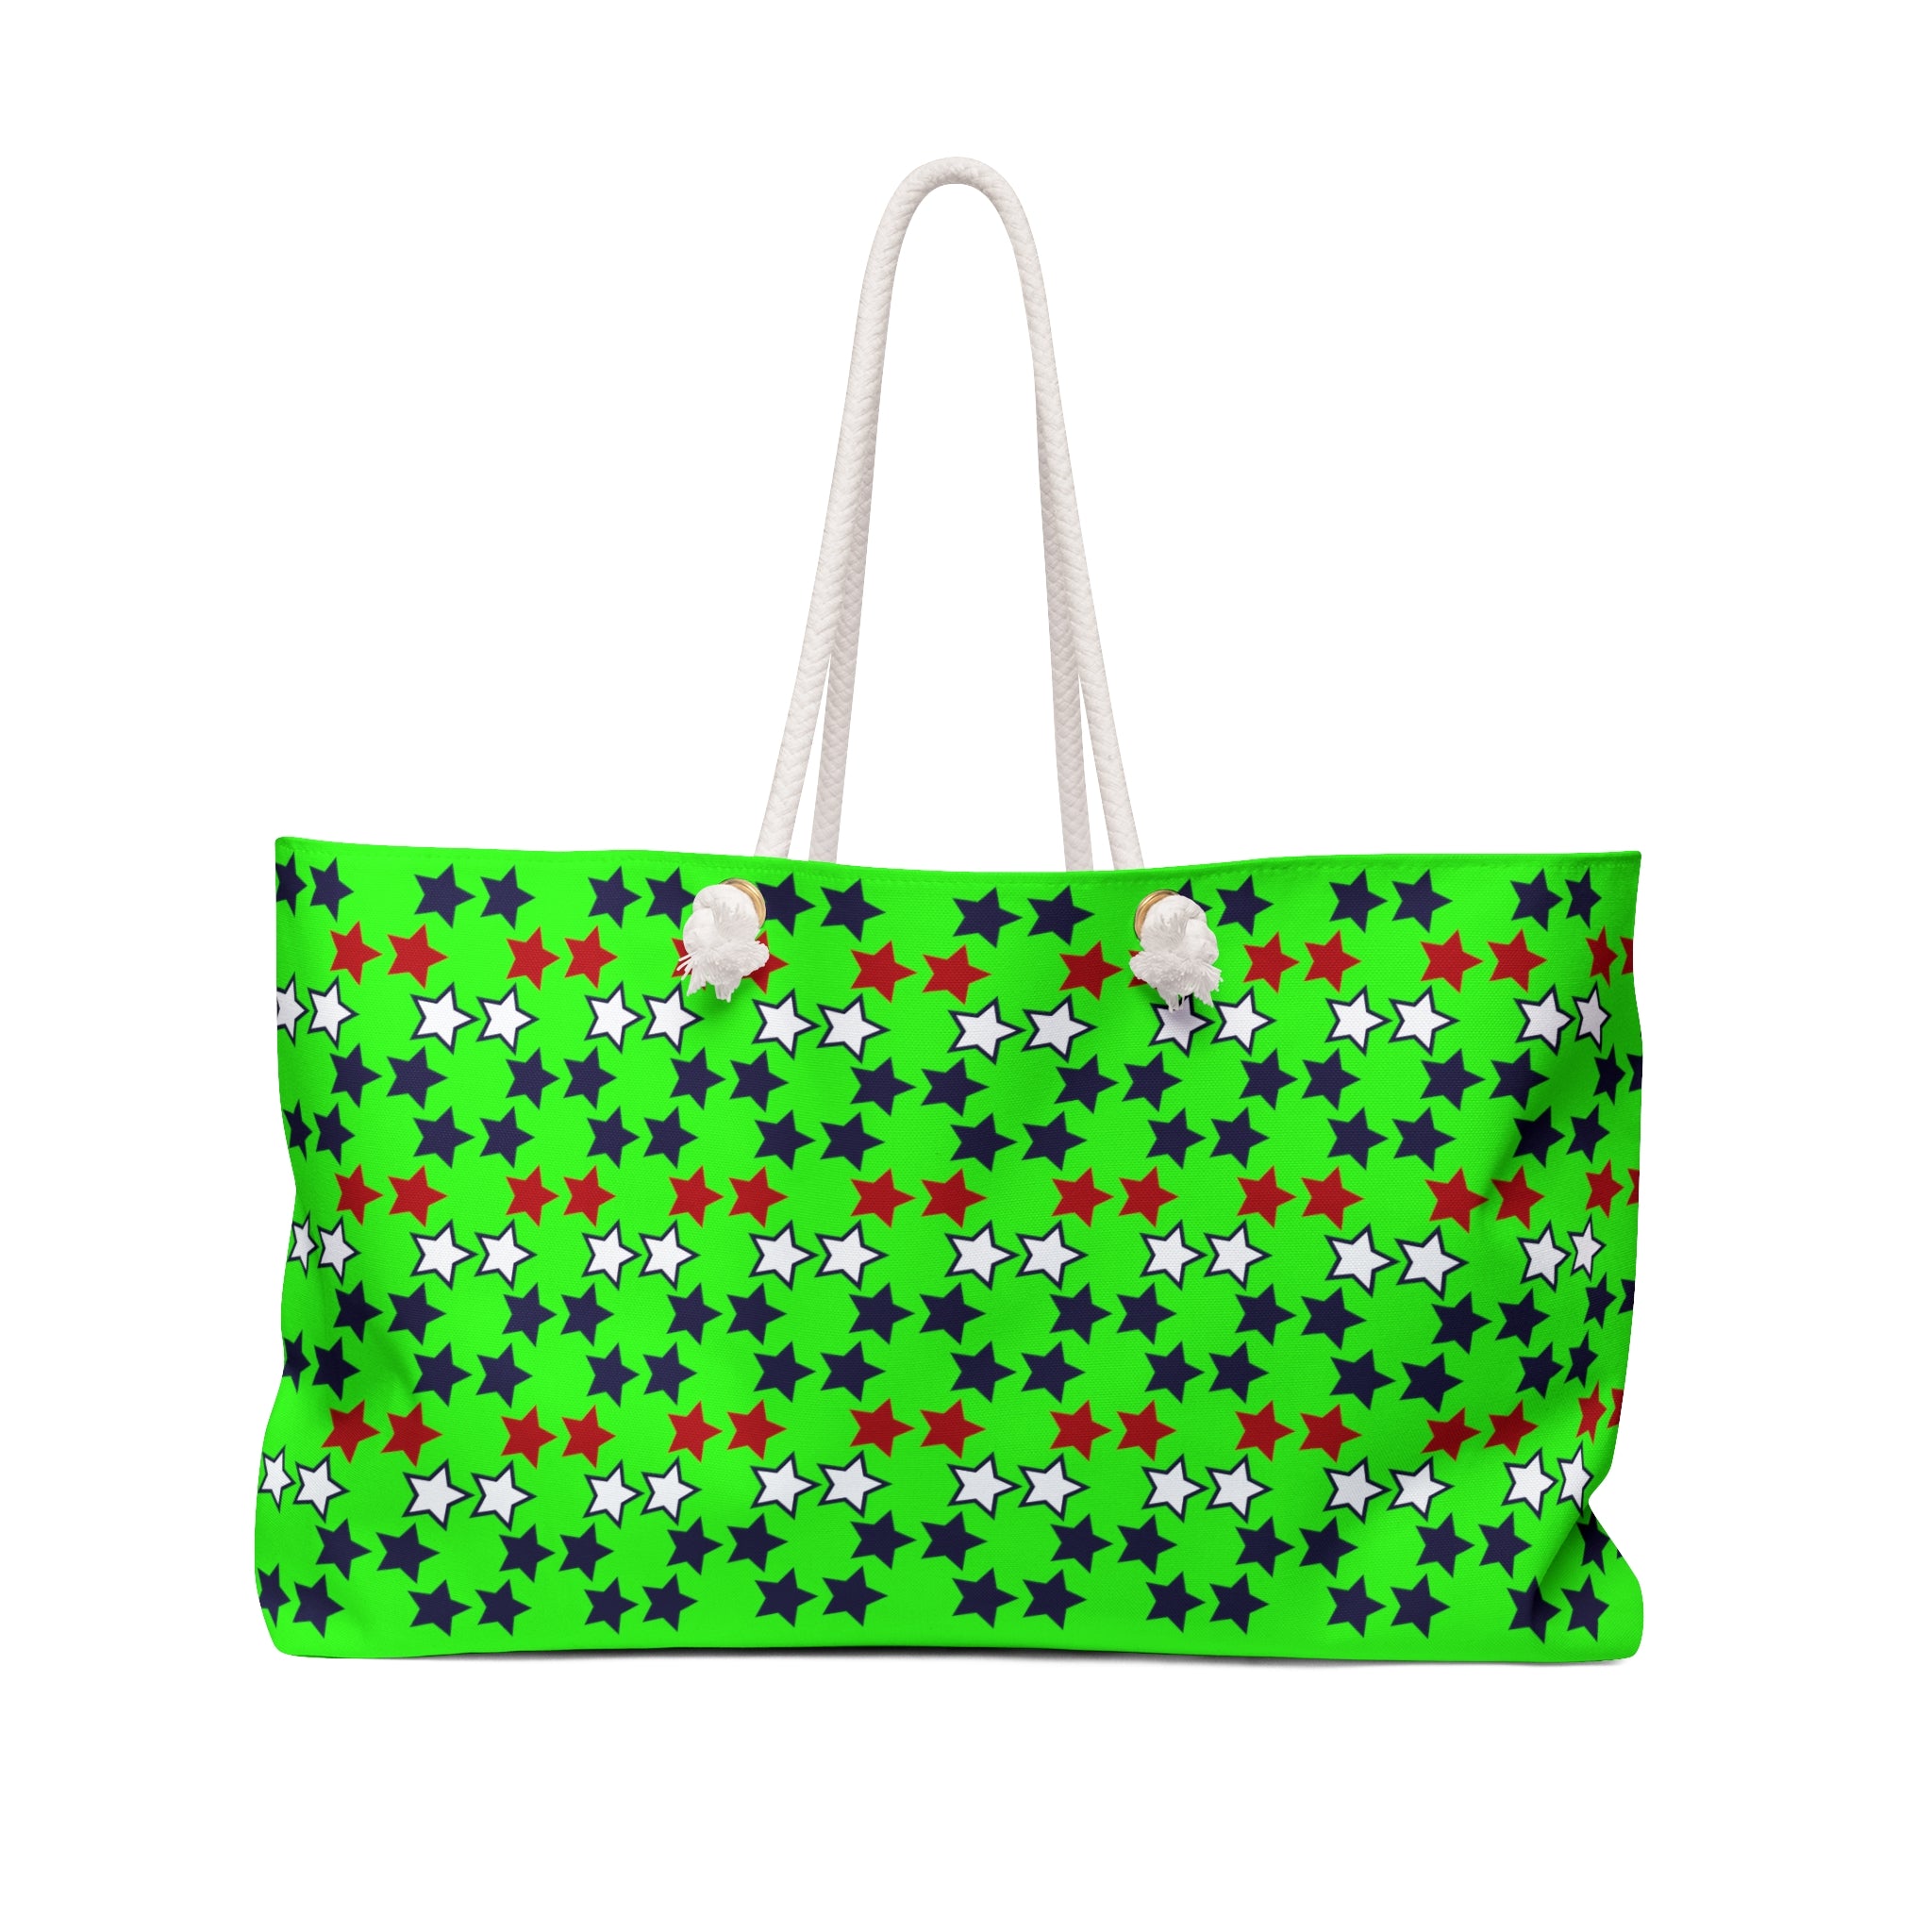 Neon Green Starry Weekender Tote Bag